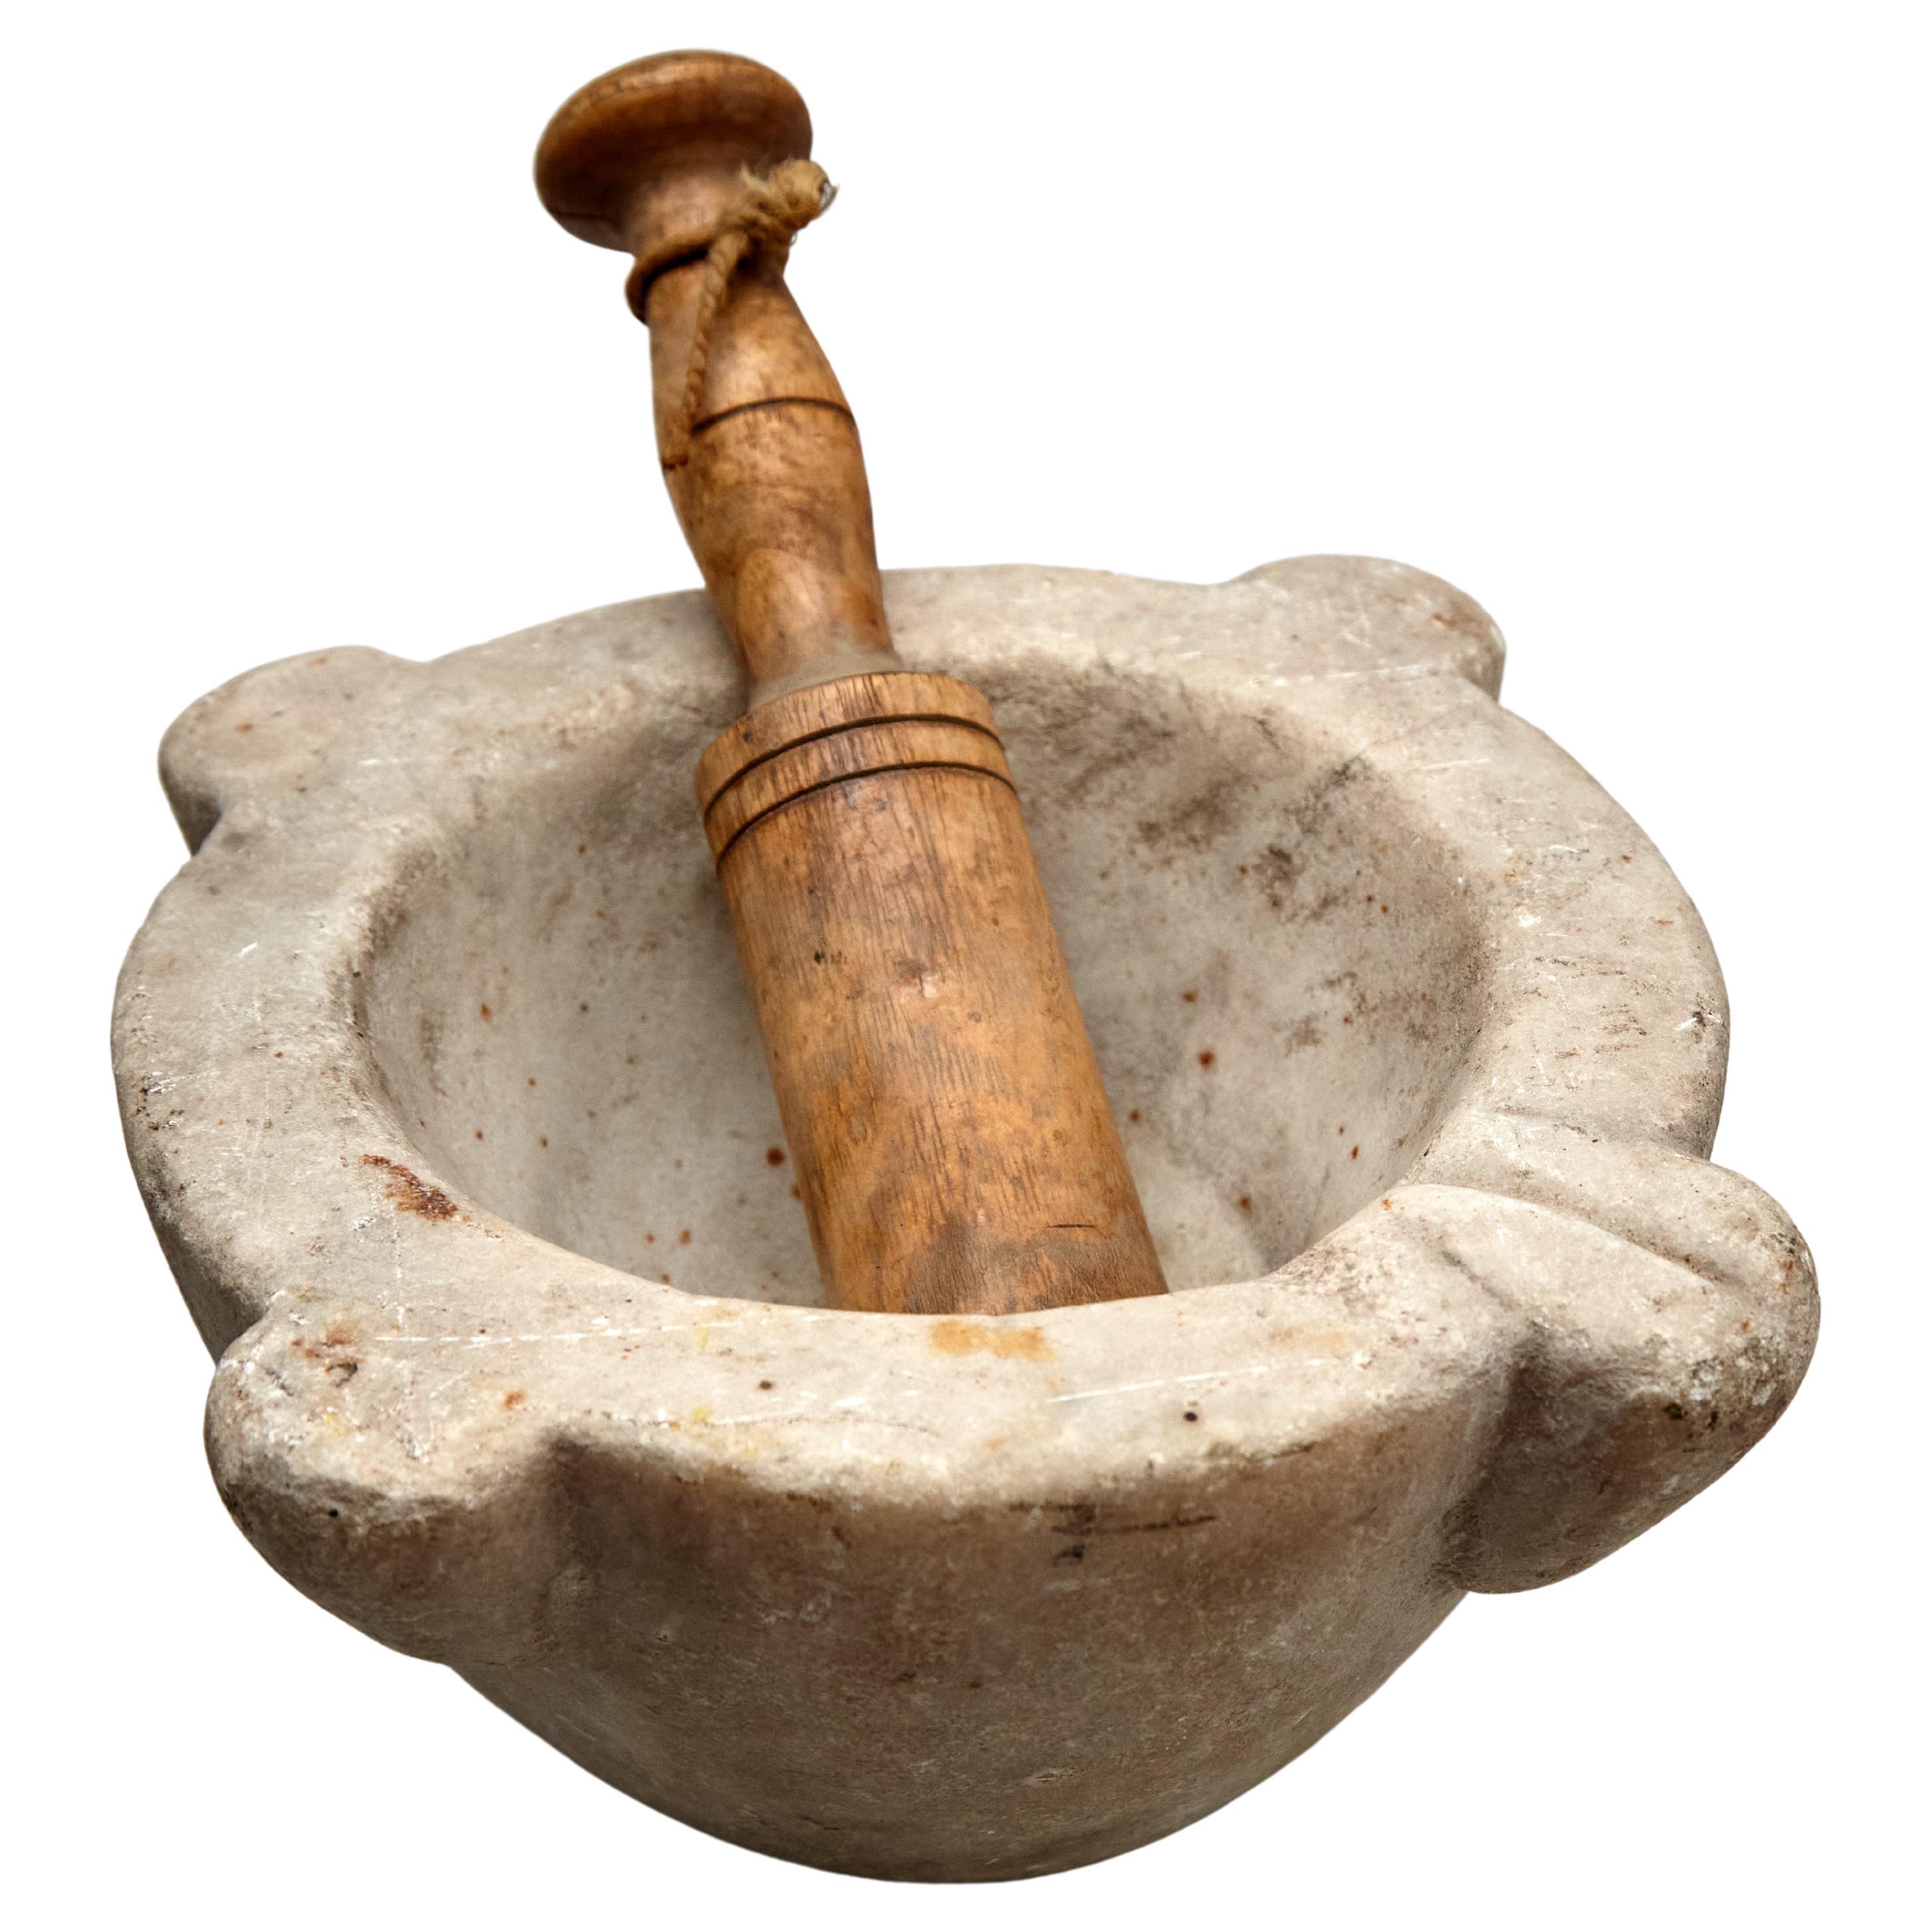 Traditioneller spanischer Mortar aus den 1940er Jahren, authentisches Vintage-Keramikgeschirr aus Stein und Holz